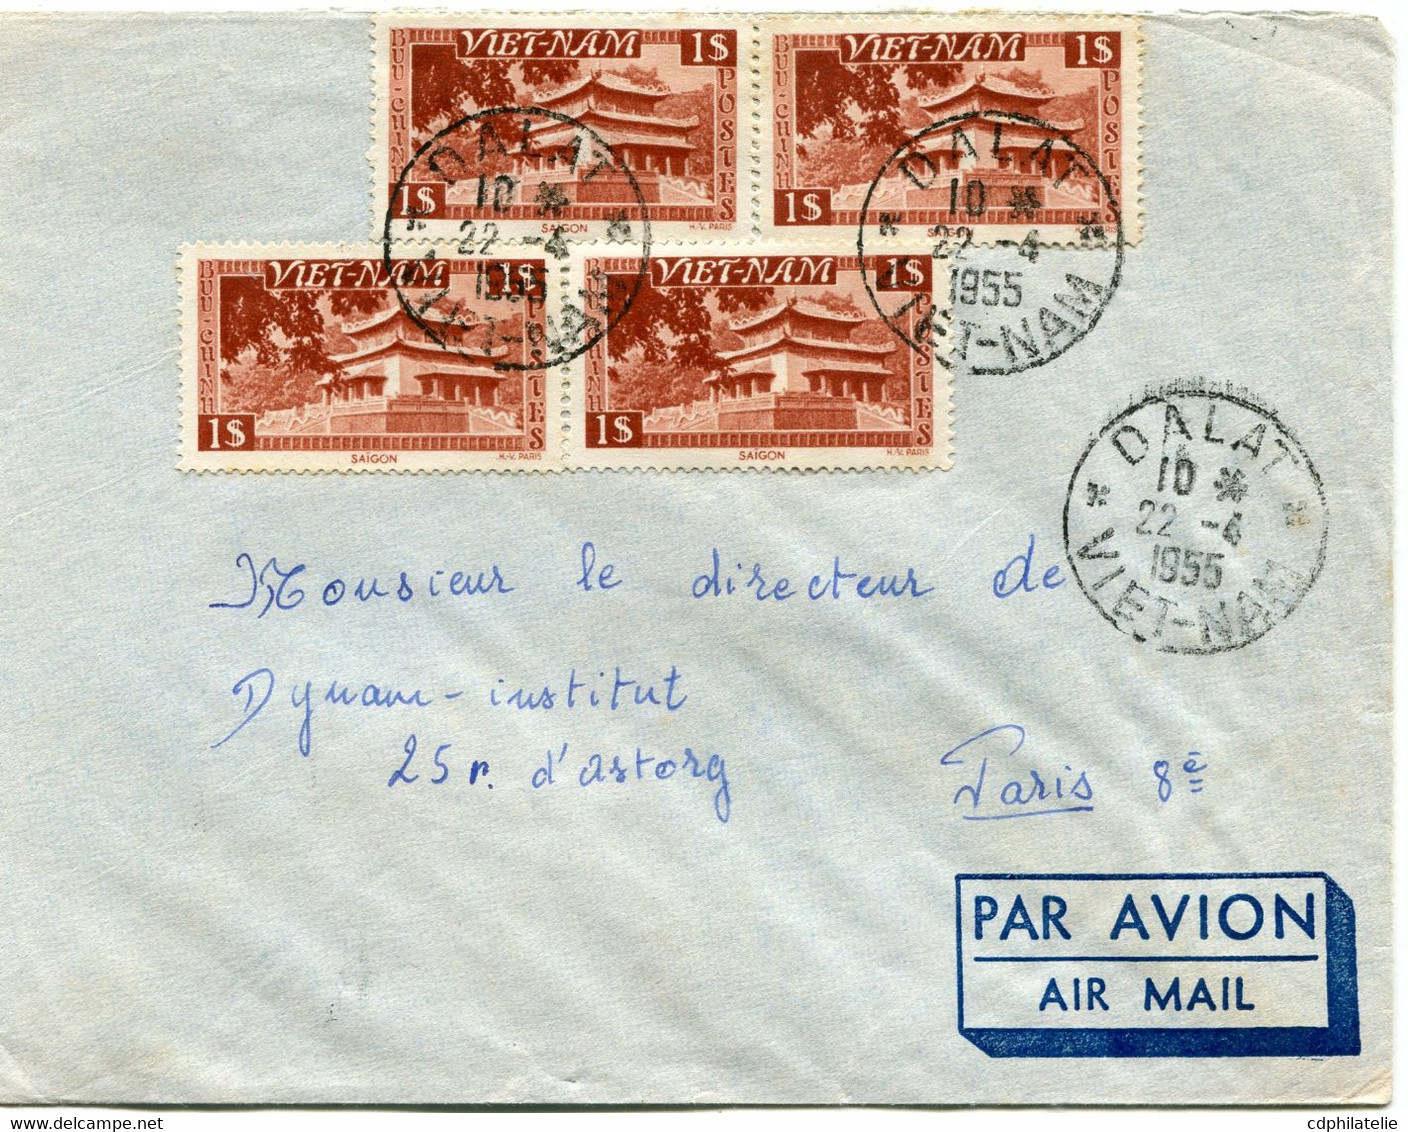 VIET-NAM LETTRE PAR AVION DEPART DALAT 22-4-1955 VIET-NAM POUR LA FRANCE - Viêt-Nam